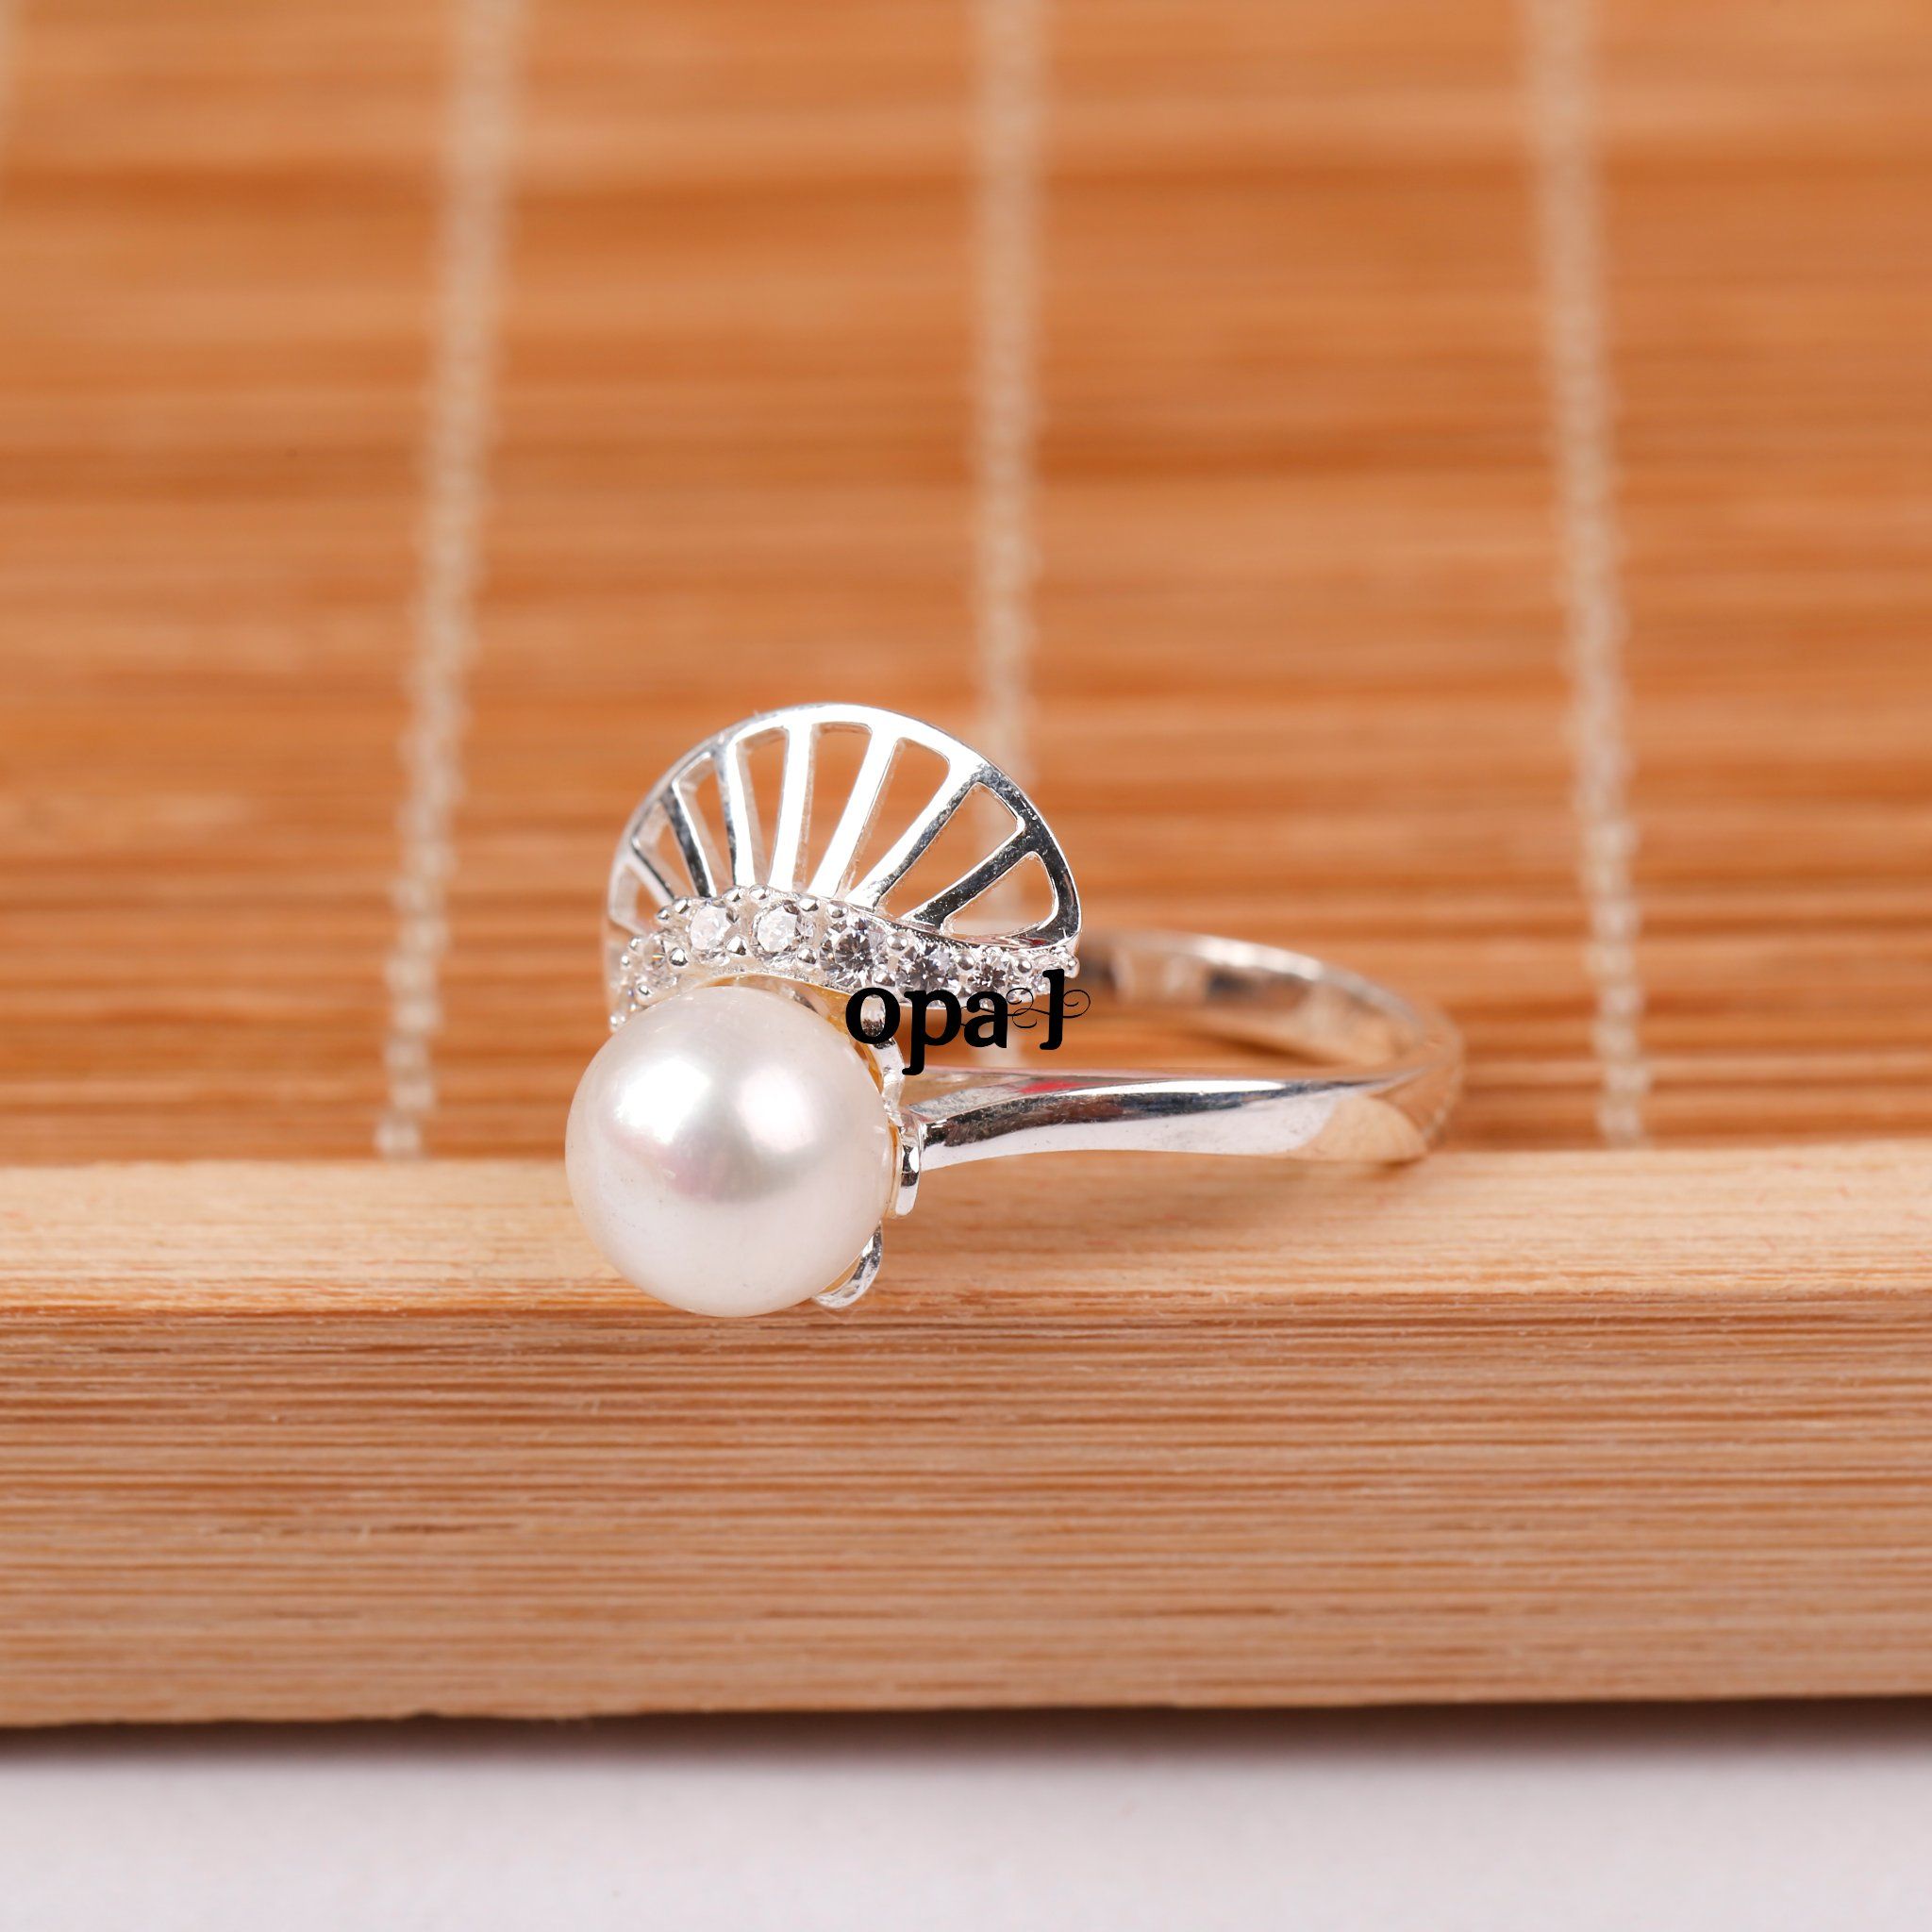  Dây chuyền và Nhẫn Bạc đính Ngọc trai phong cách mới thương hiệu Opal 